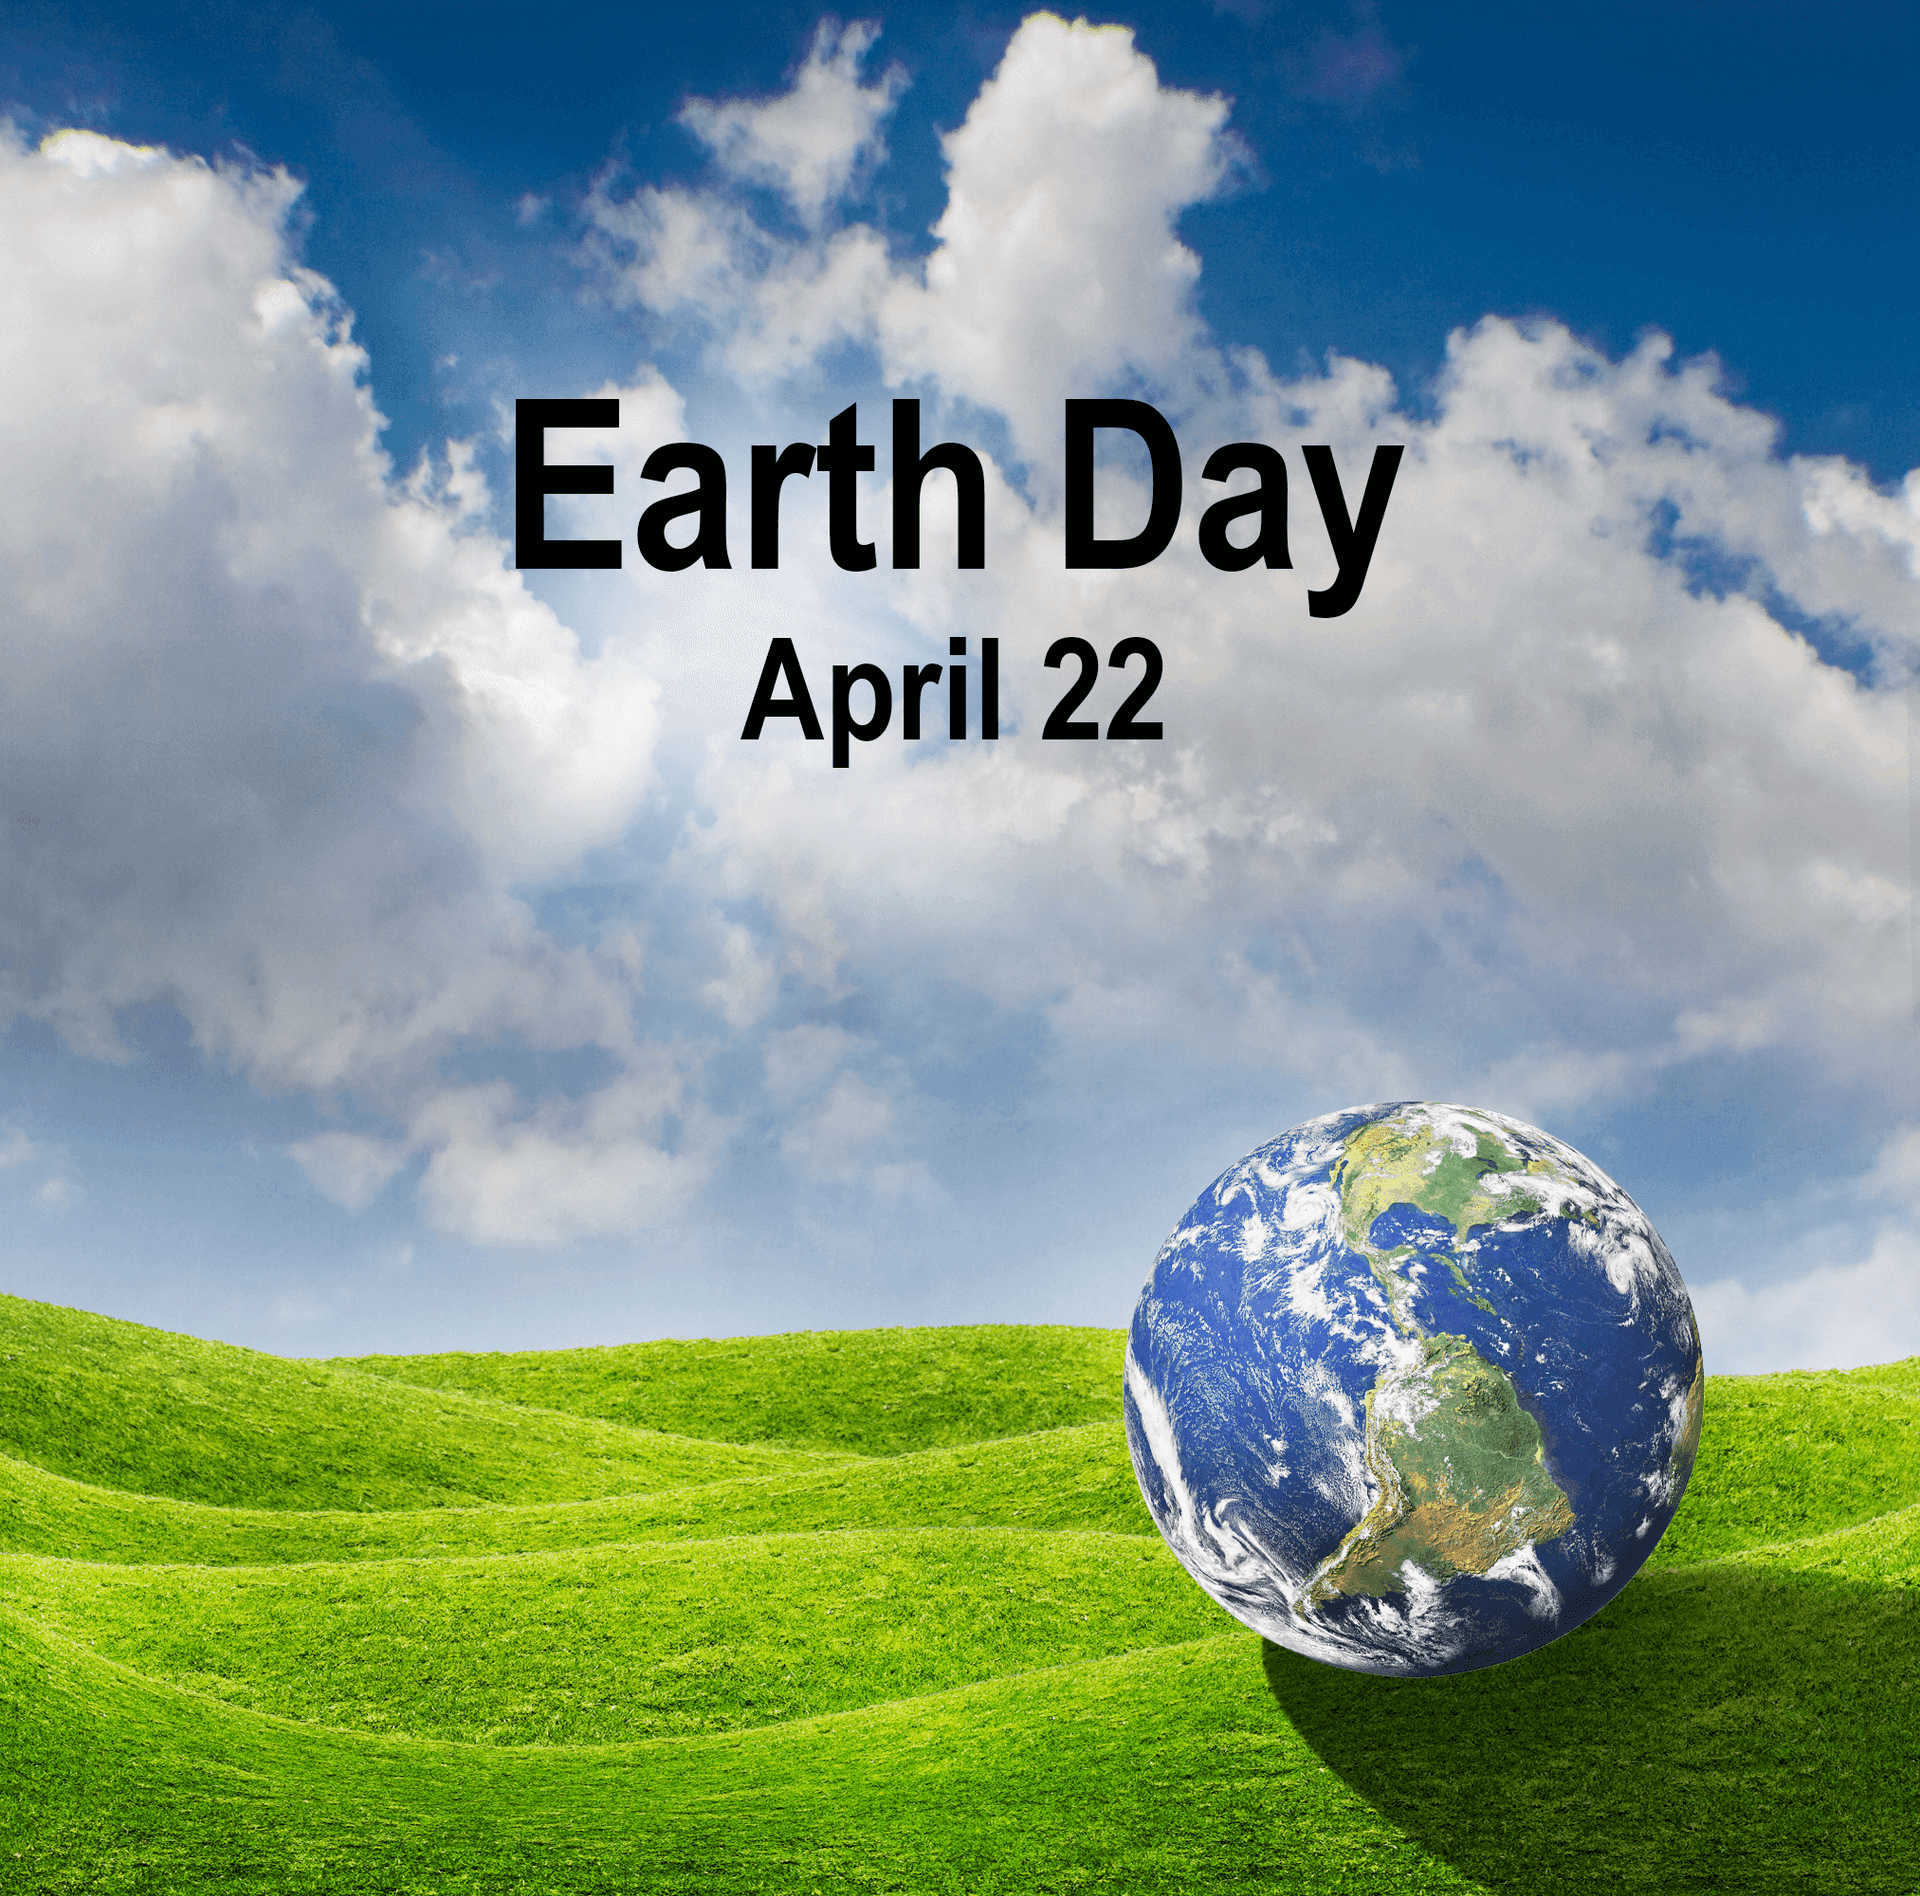 Feiertden Earth Day 2021